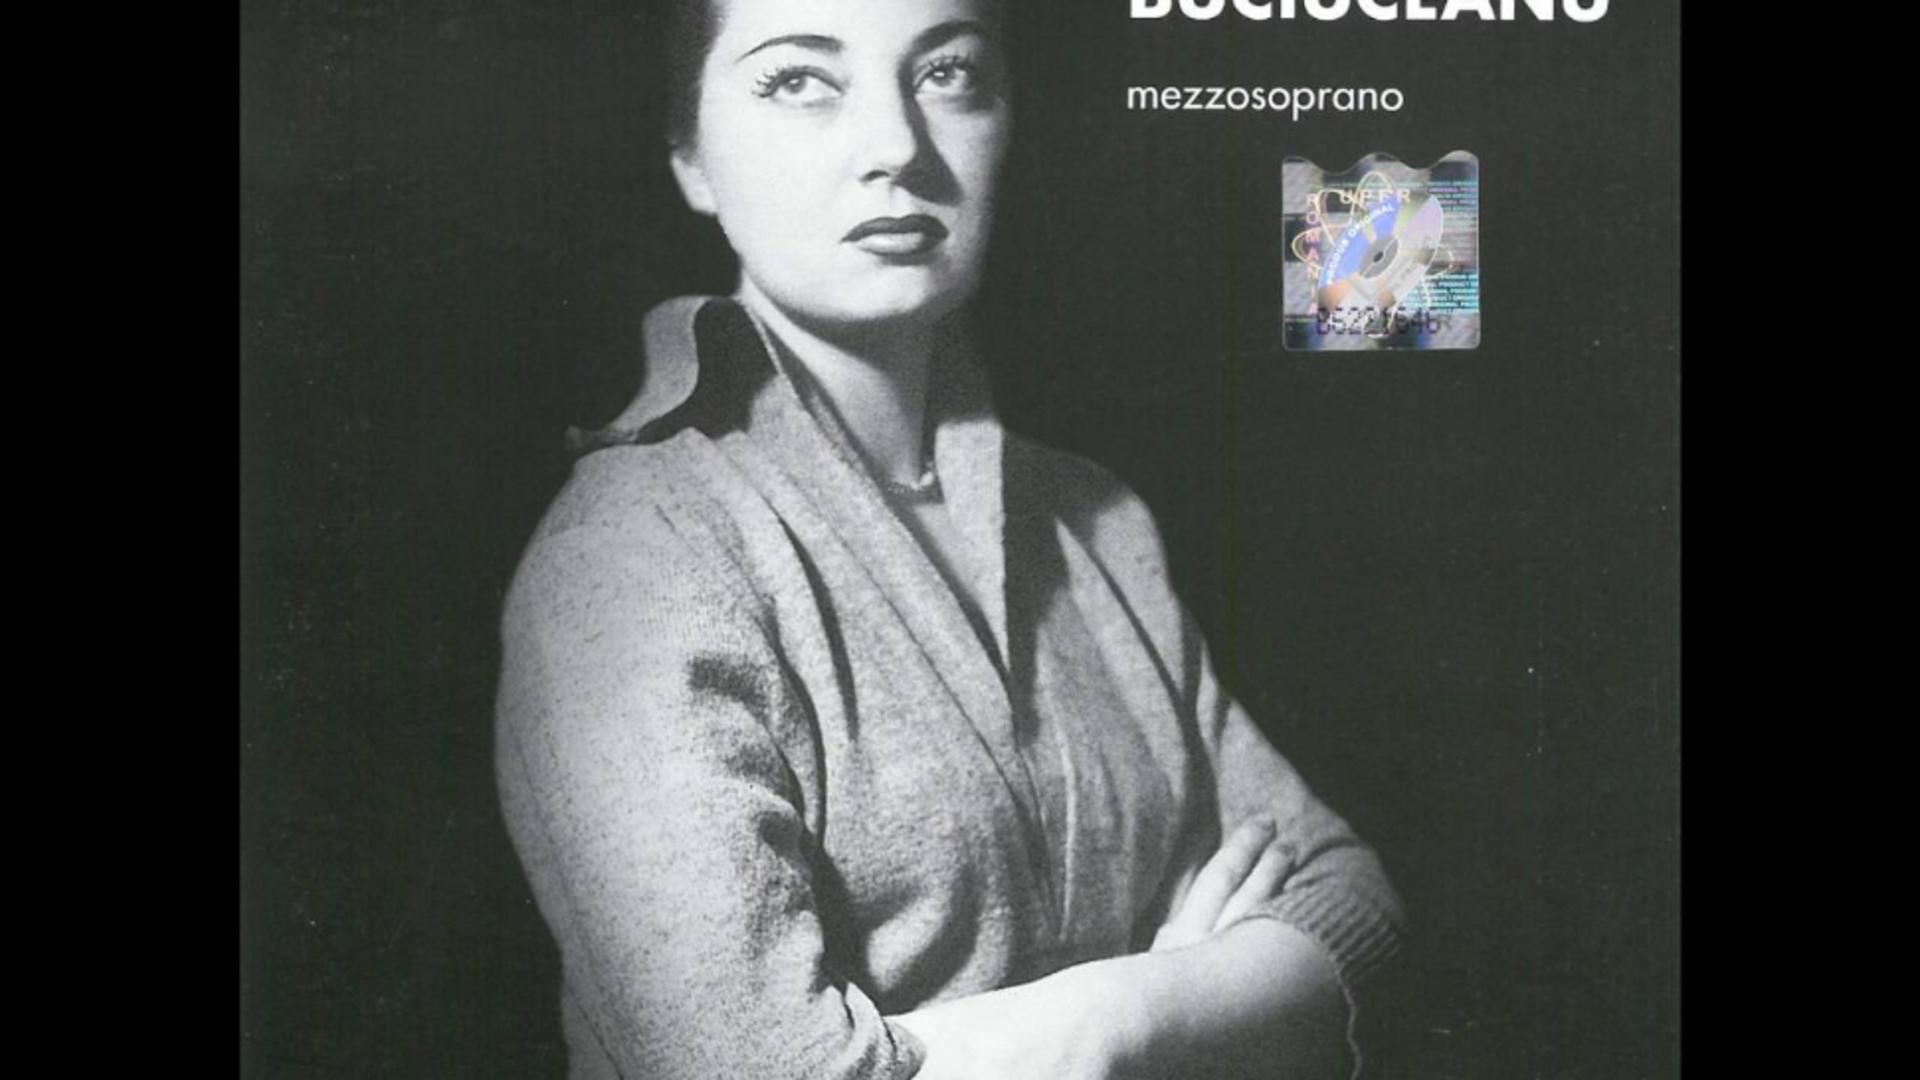 DOLIU în cultura românească: a MURIT o mezzosoprană - prim solistă a Operei Române din Bucureşti 